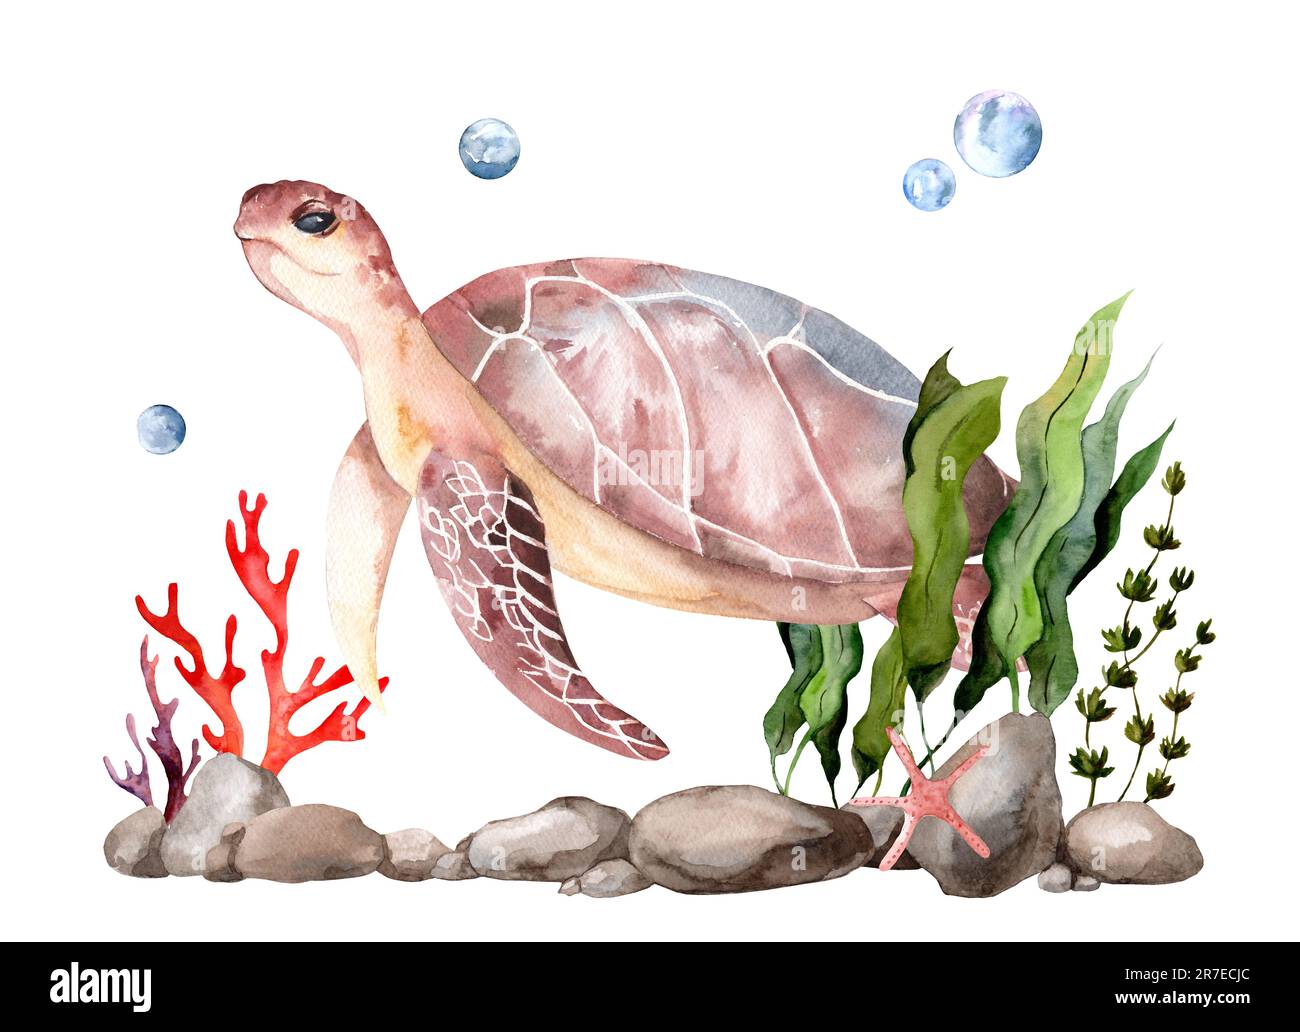 Illustration réaliste de tortue de mer peinte à l'aquarelle. Image de créatures marines nageant dans le monde sous-marin. Reptile amphibie isolé sur blanc Banque D'Images